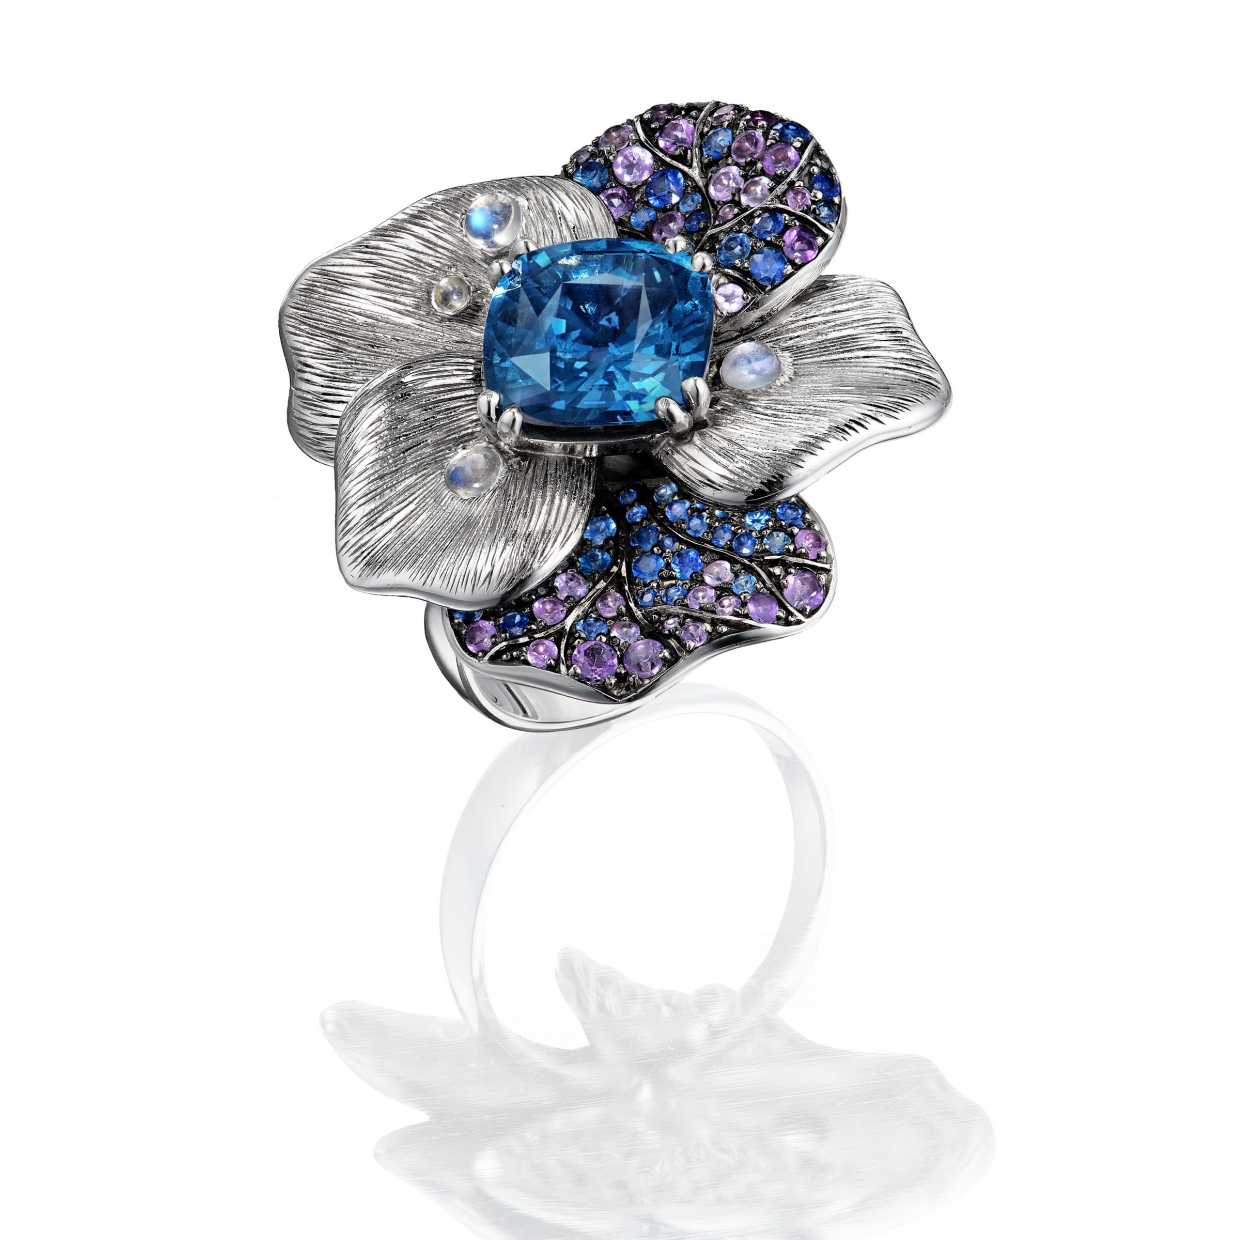 Кольцо с синей шпинелью в россыпи аметистов, сапфиров и лунных камней 